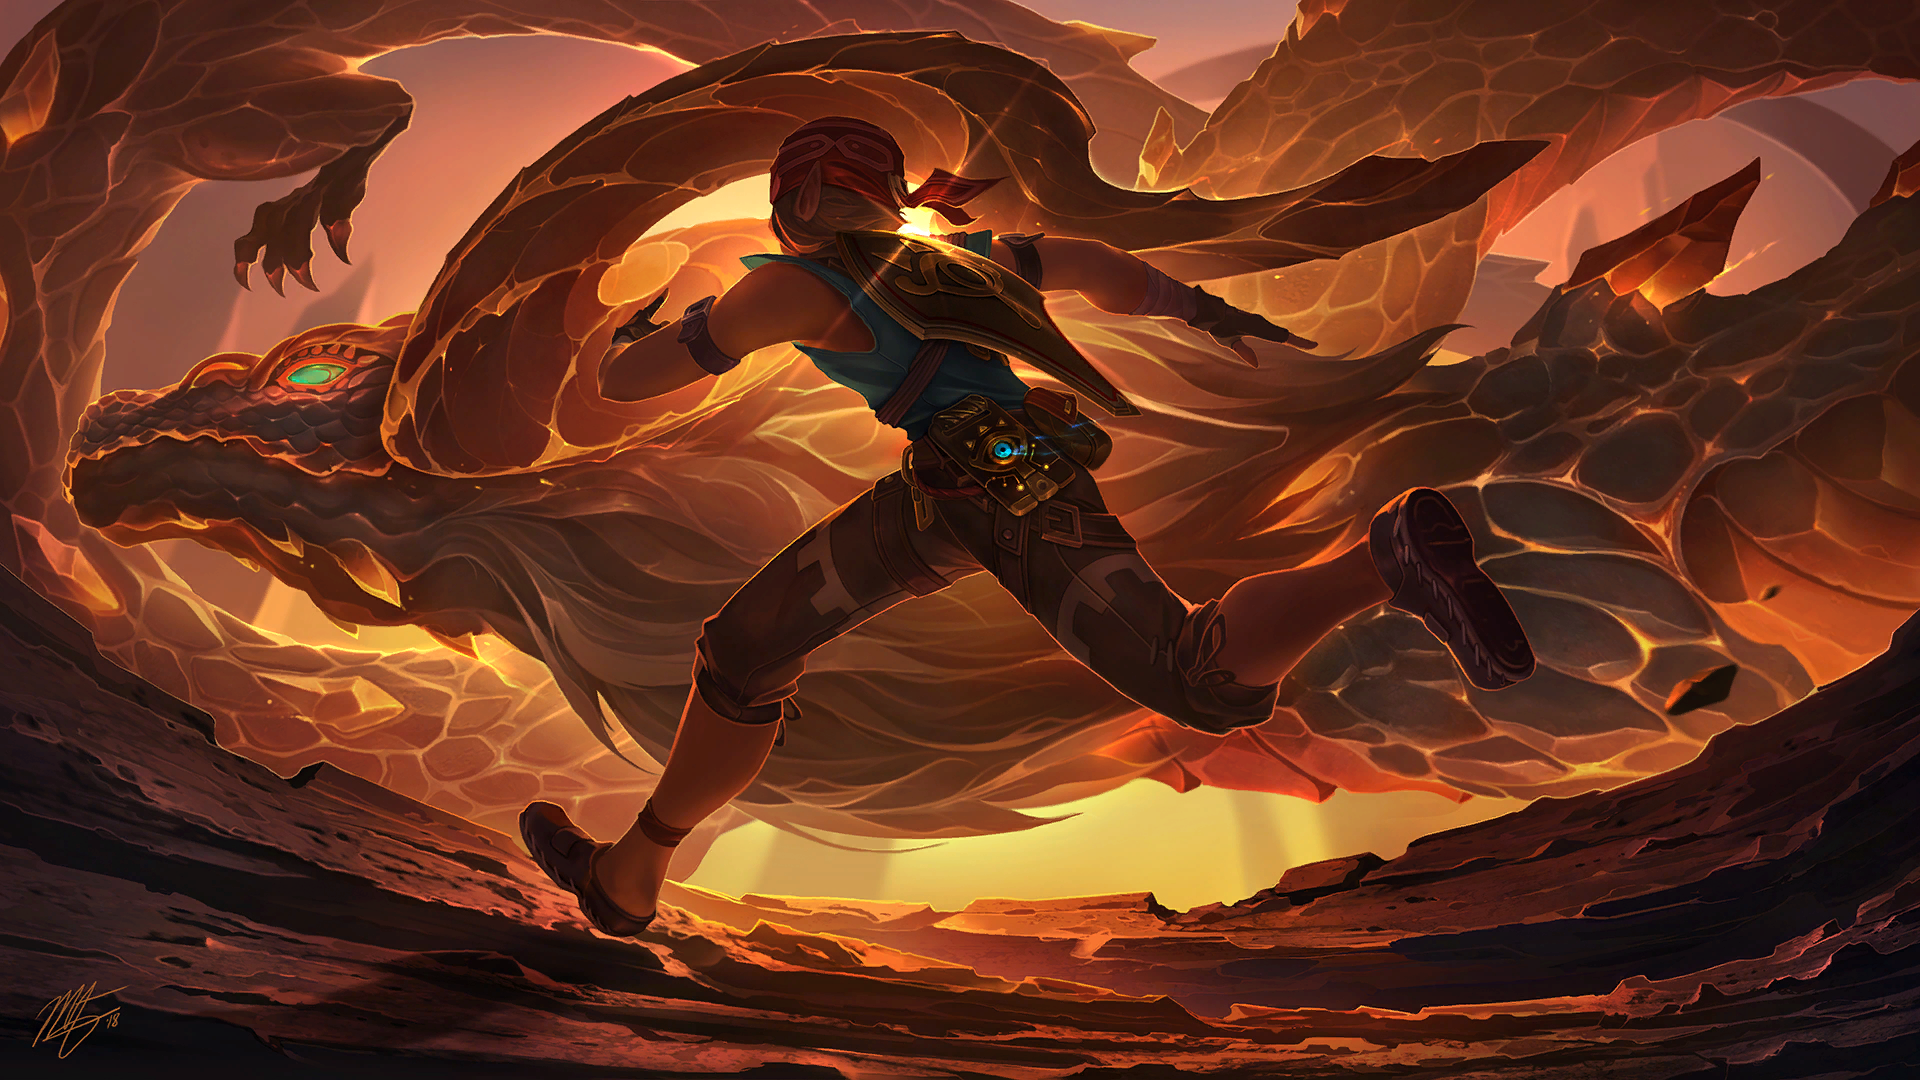 Sunset run - The legend of zelda, Link, The Dragon, Art, 